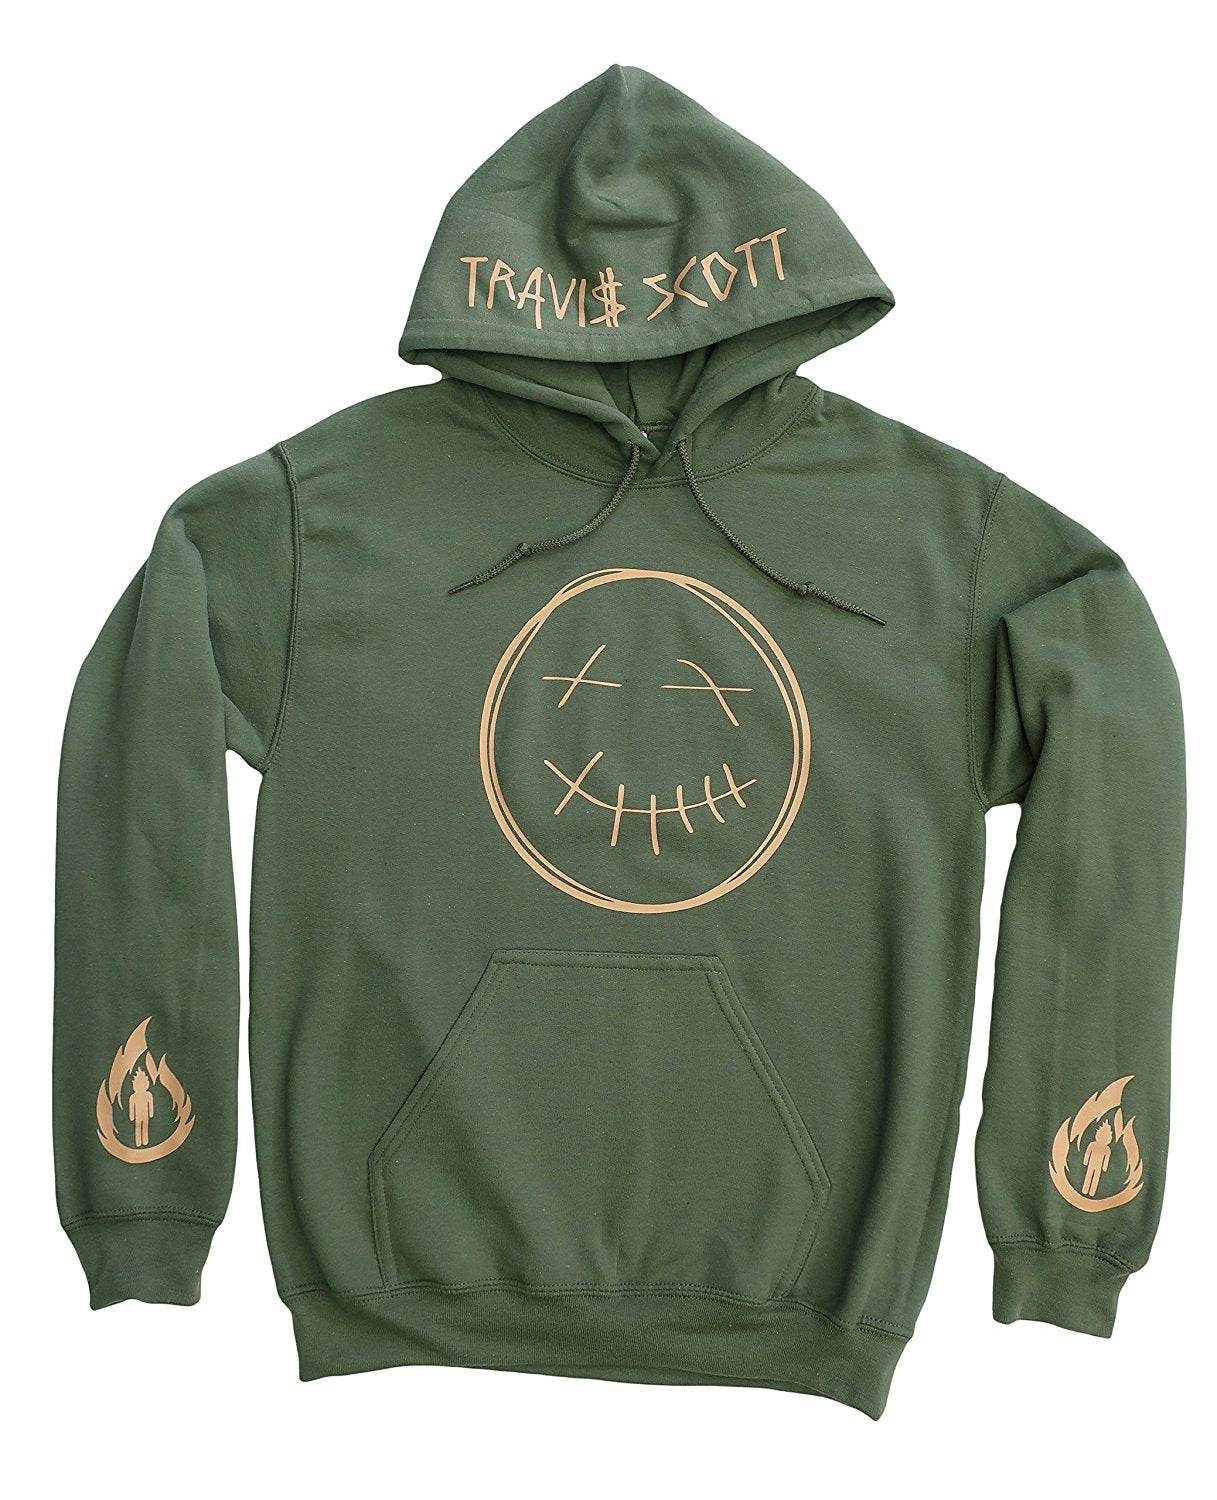 travis scott merchandise hoodie